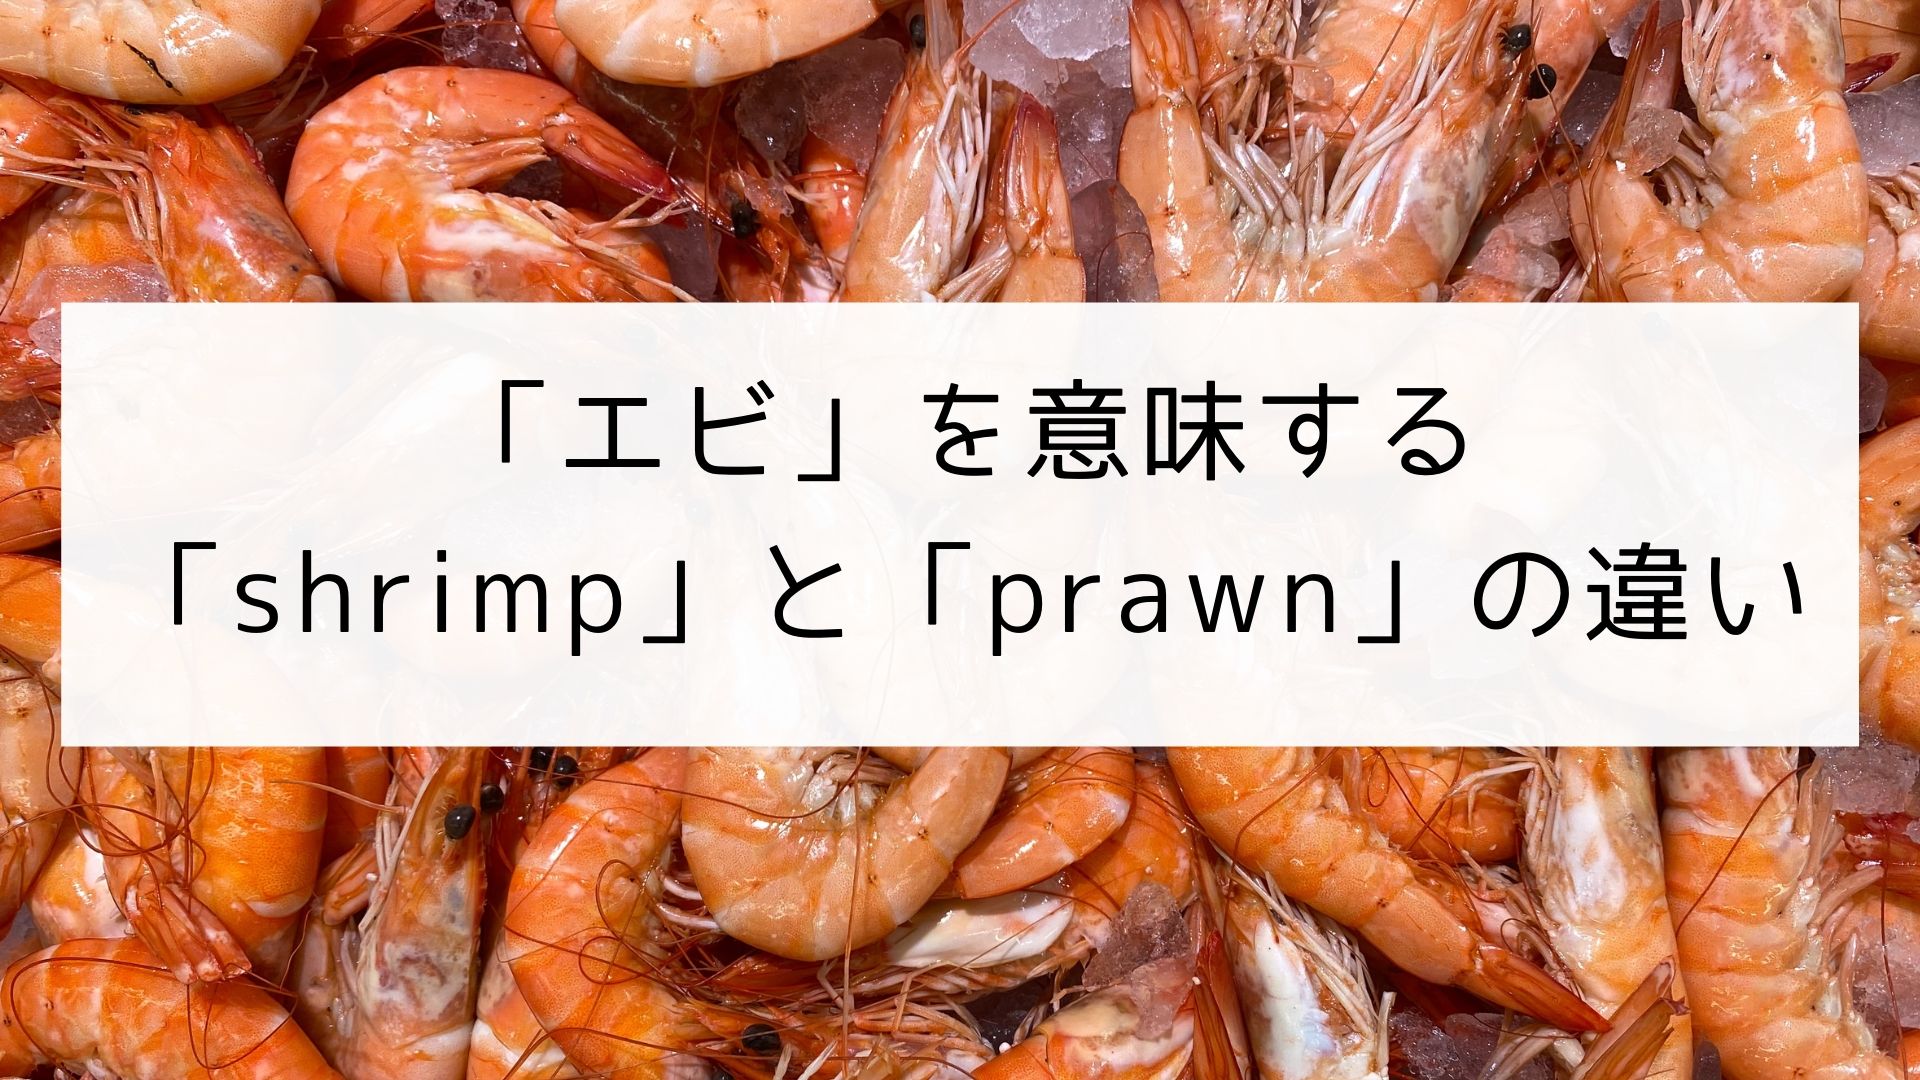 英単語 エビを意味する Shrimp と Prawn の違い 日本語教師の英語講座